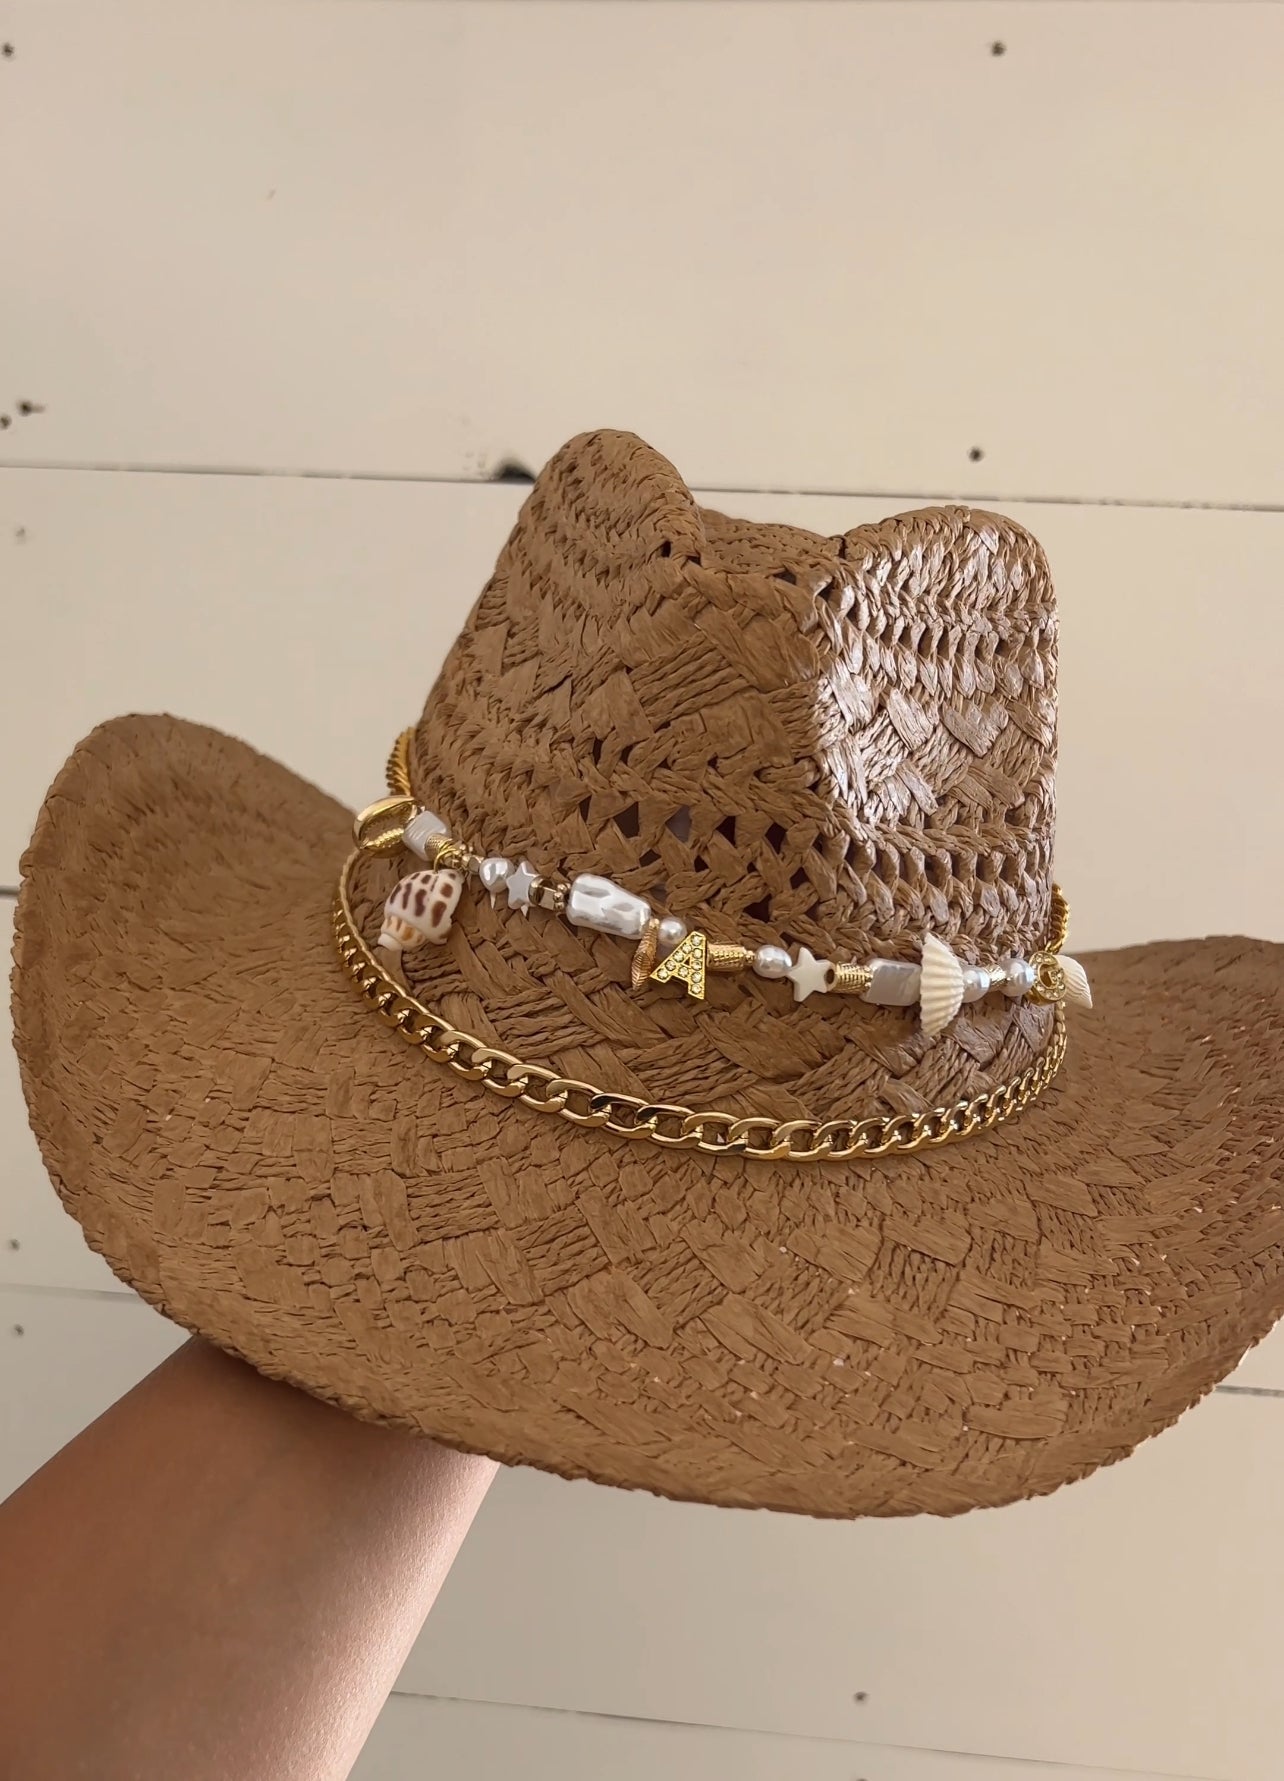 Coastal Cowgirl Hat Workshop - May 15th